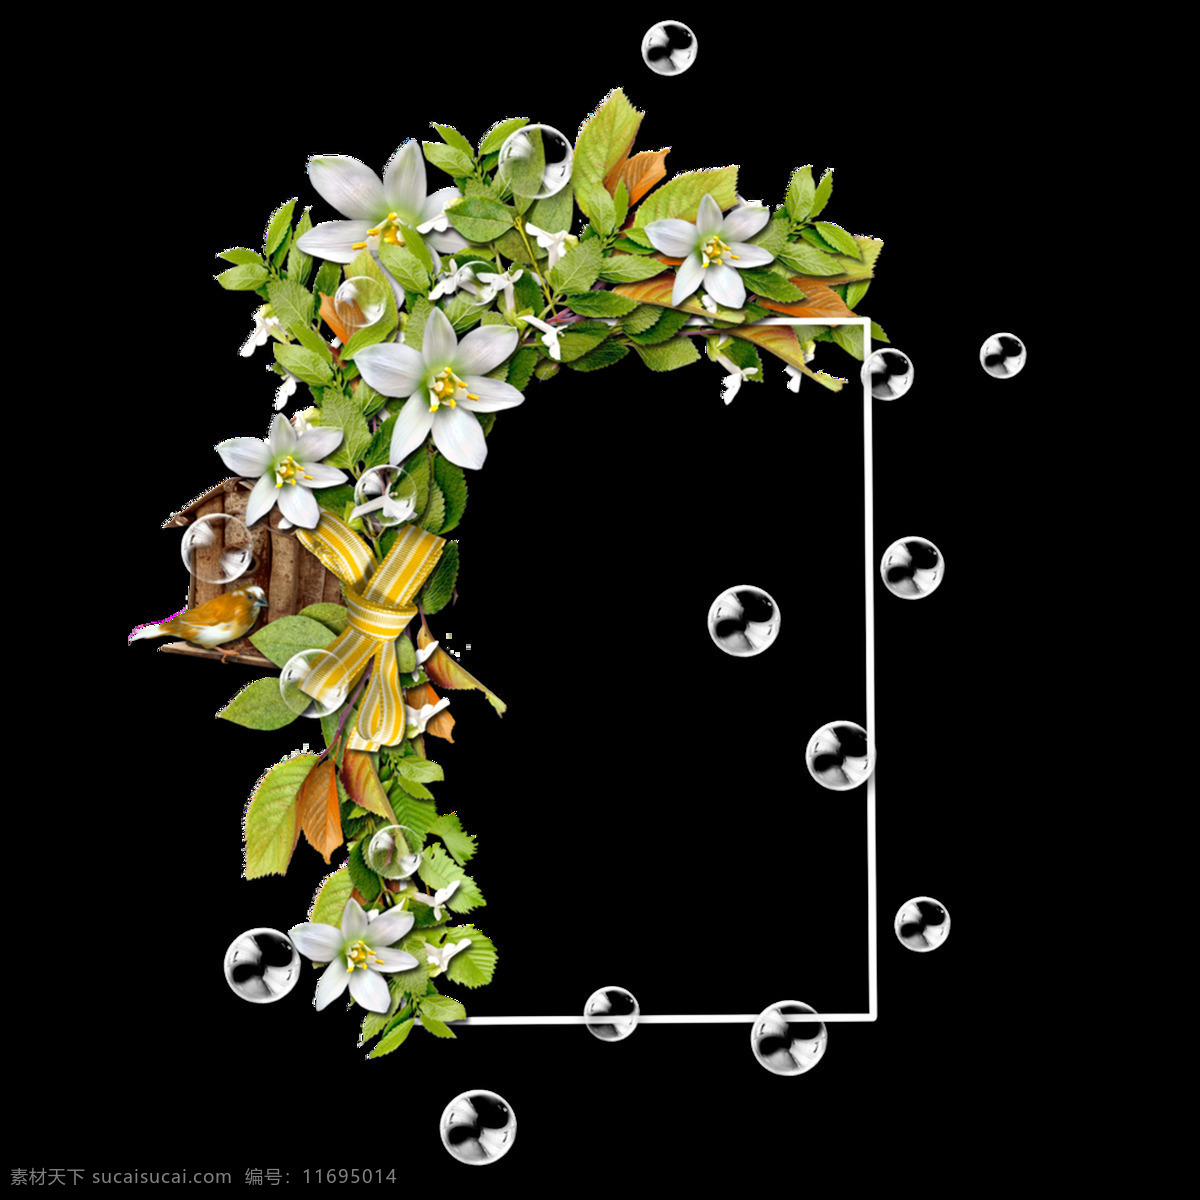 缤纷 色彩 花卉 边框 透明 卡通 抠图专用 装饰 设计素材